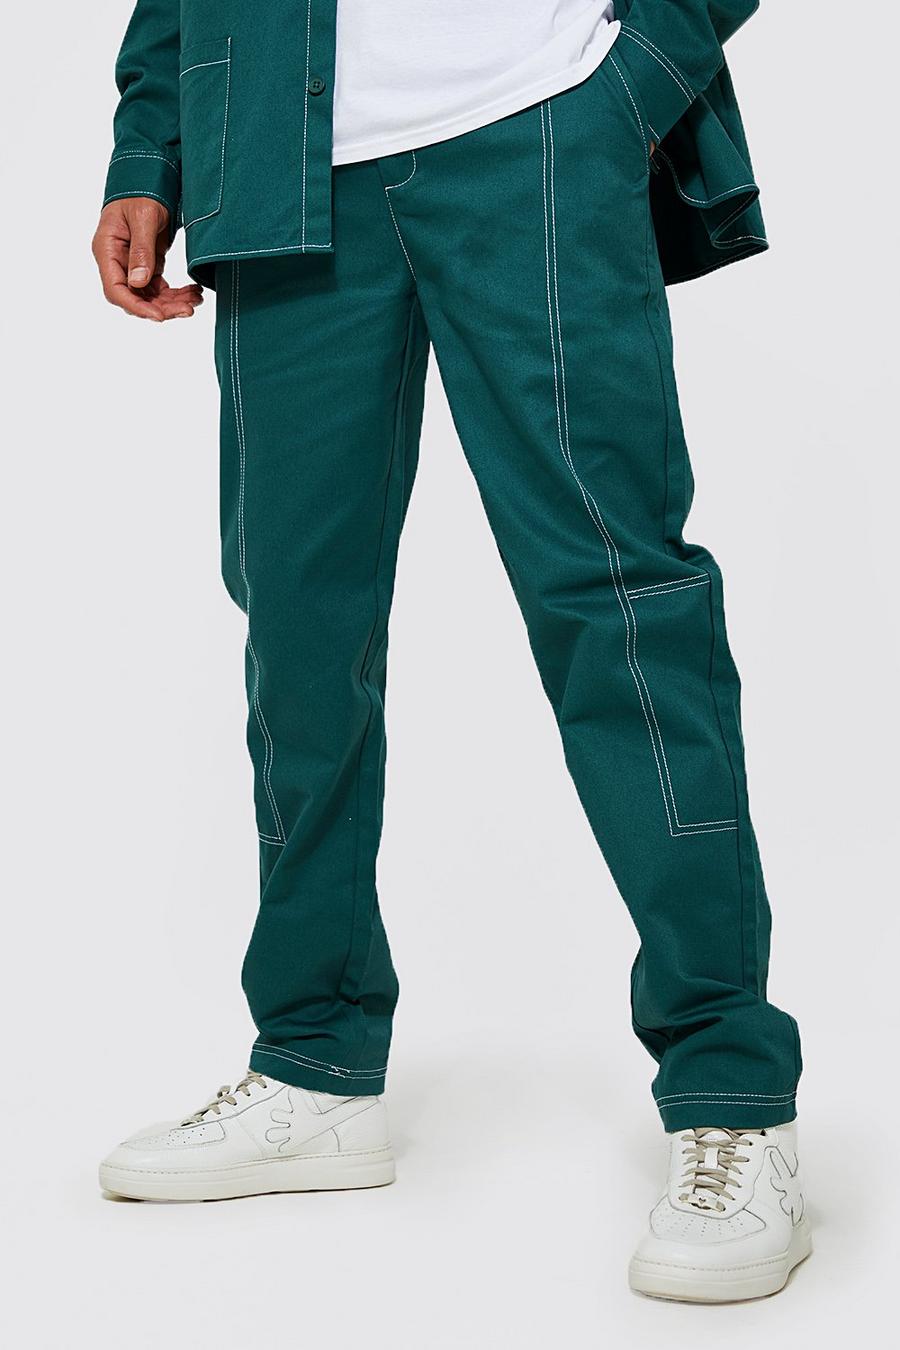 ירוק כהה verde מכנסיים מאריג טוויל בגזרה ישרה עם תפרים בצבעים מנוגדים לגברים גבוהים